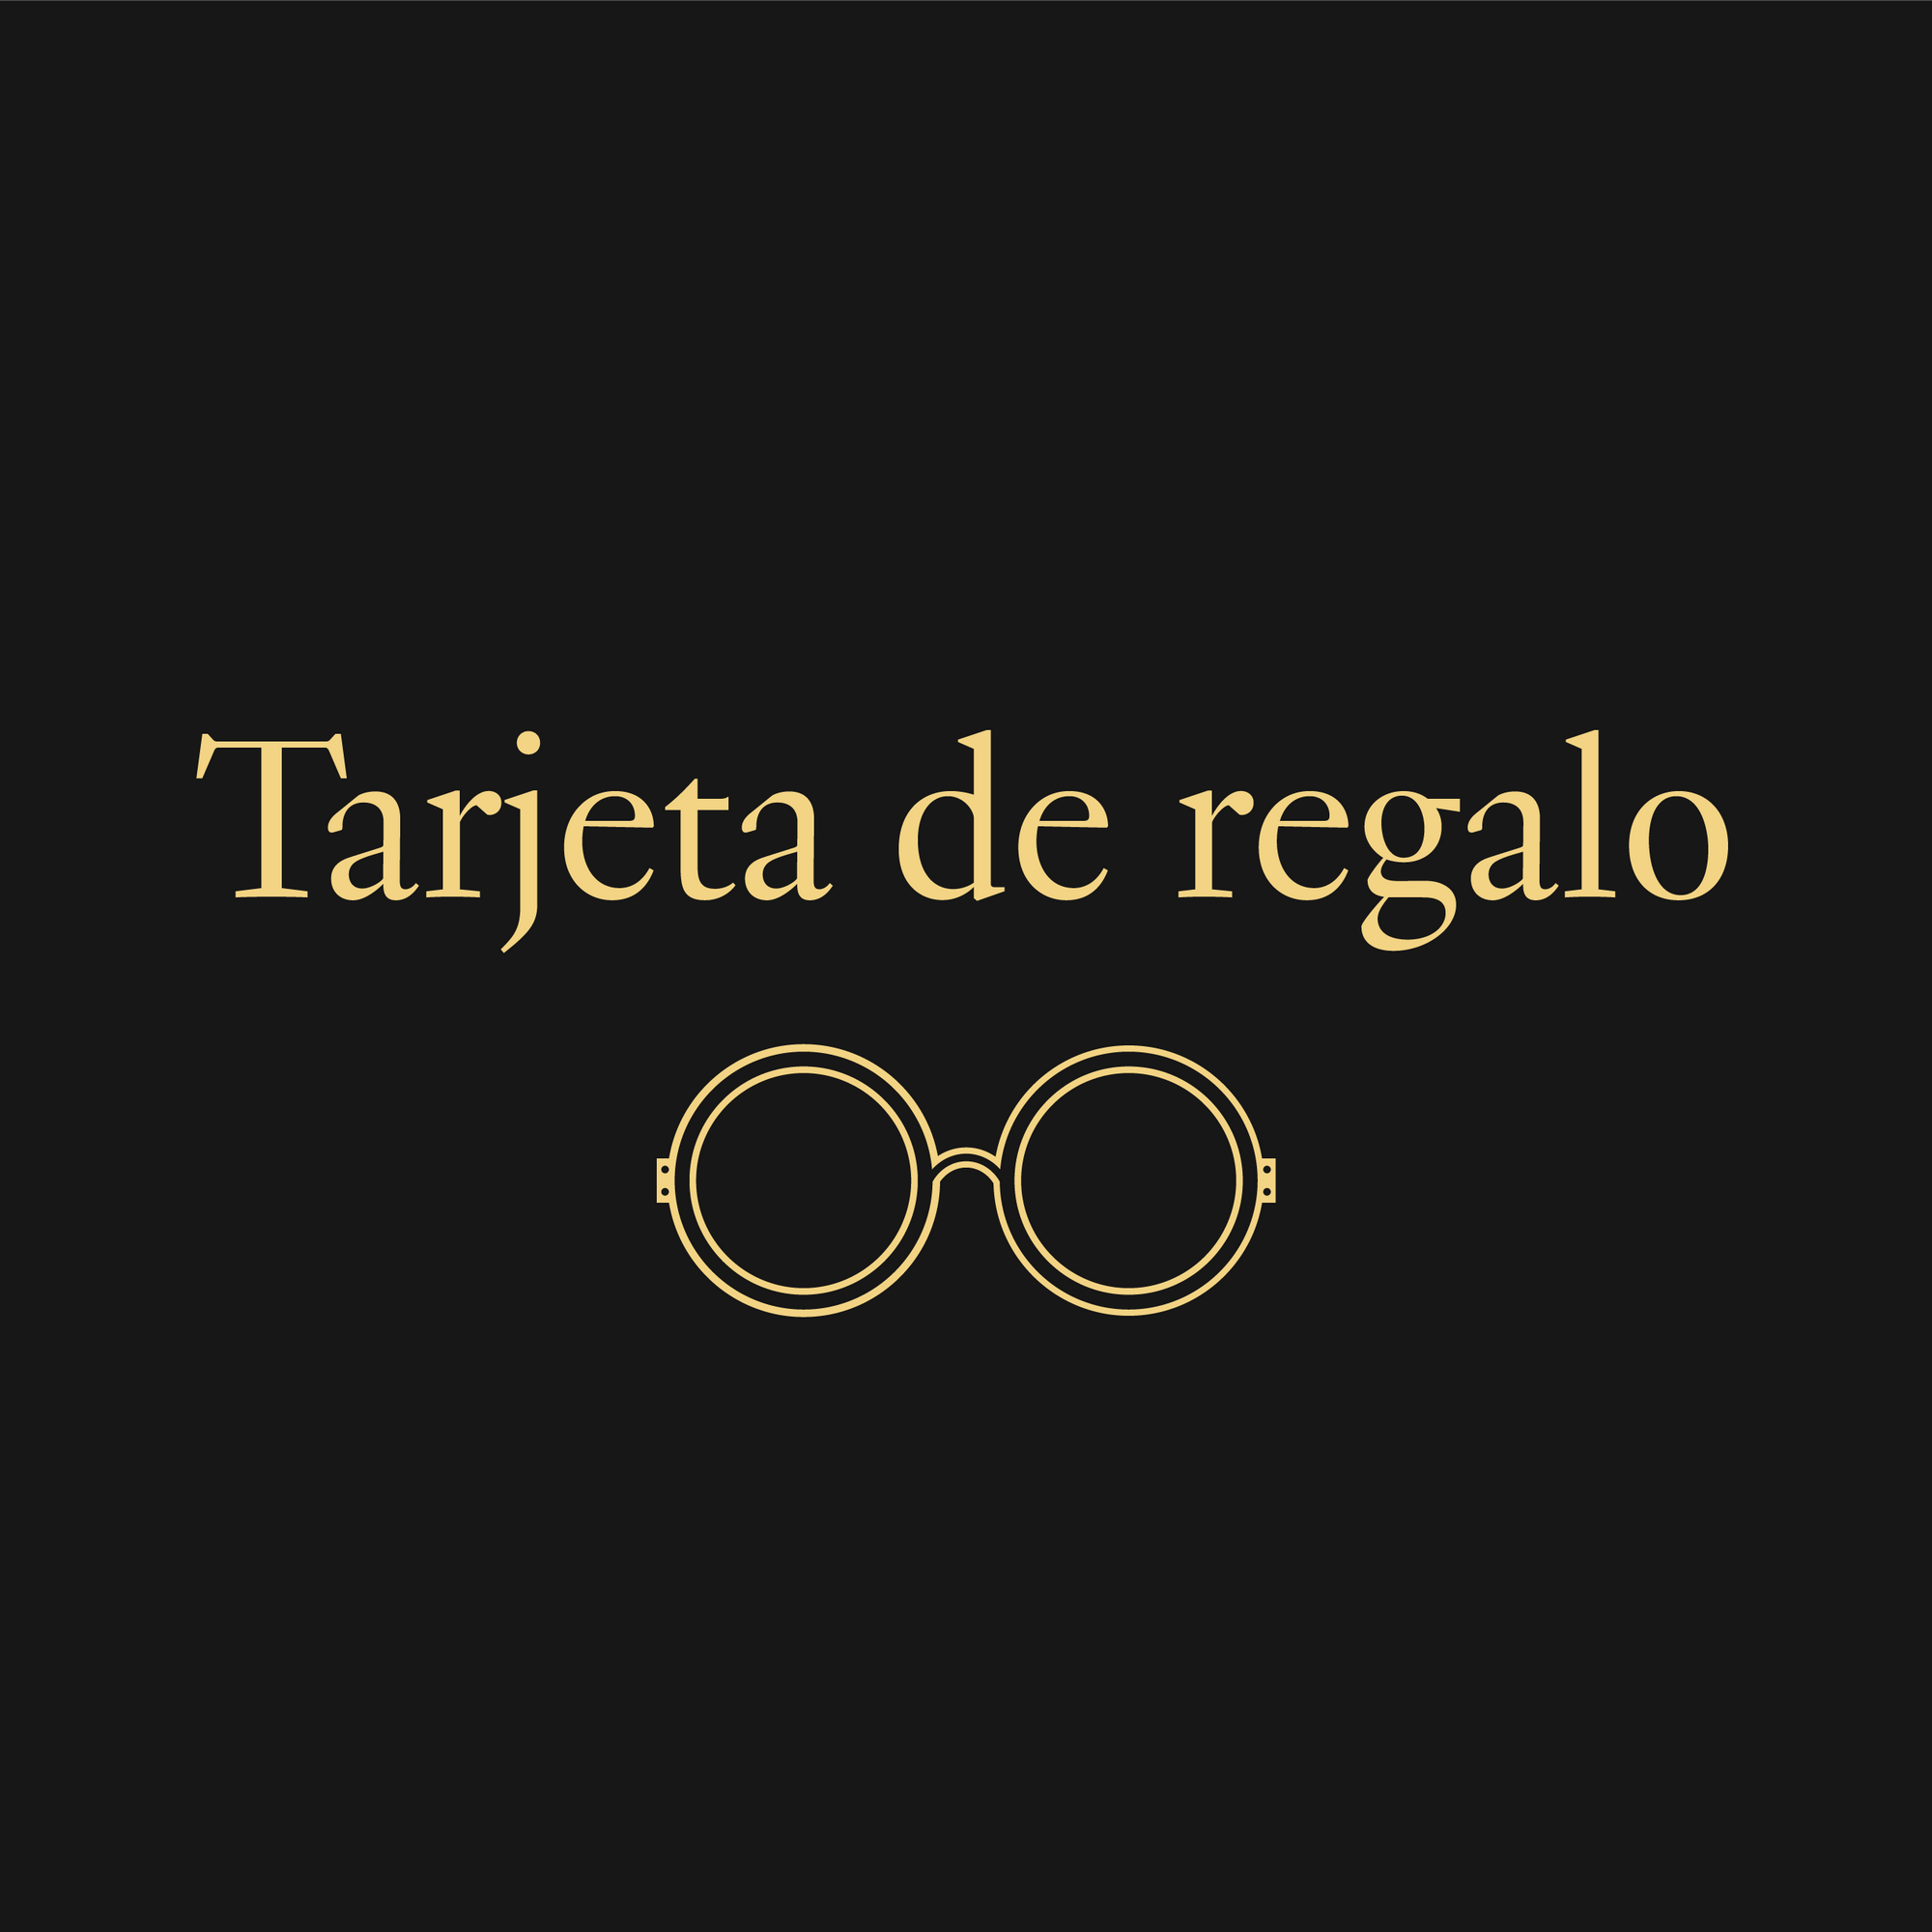 Tarjeta de Regalo